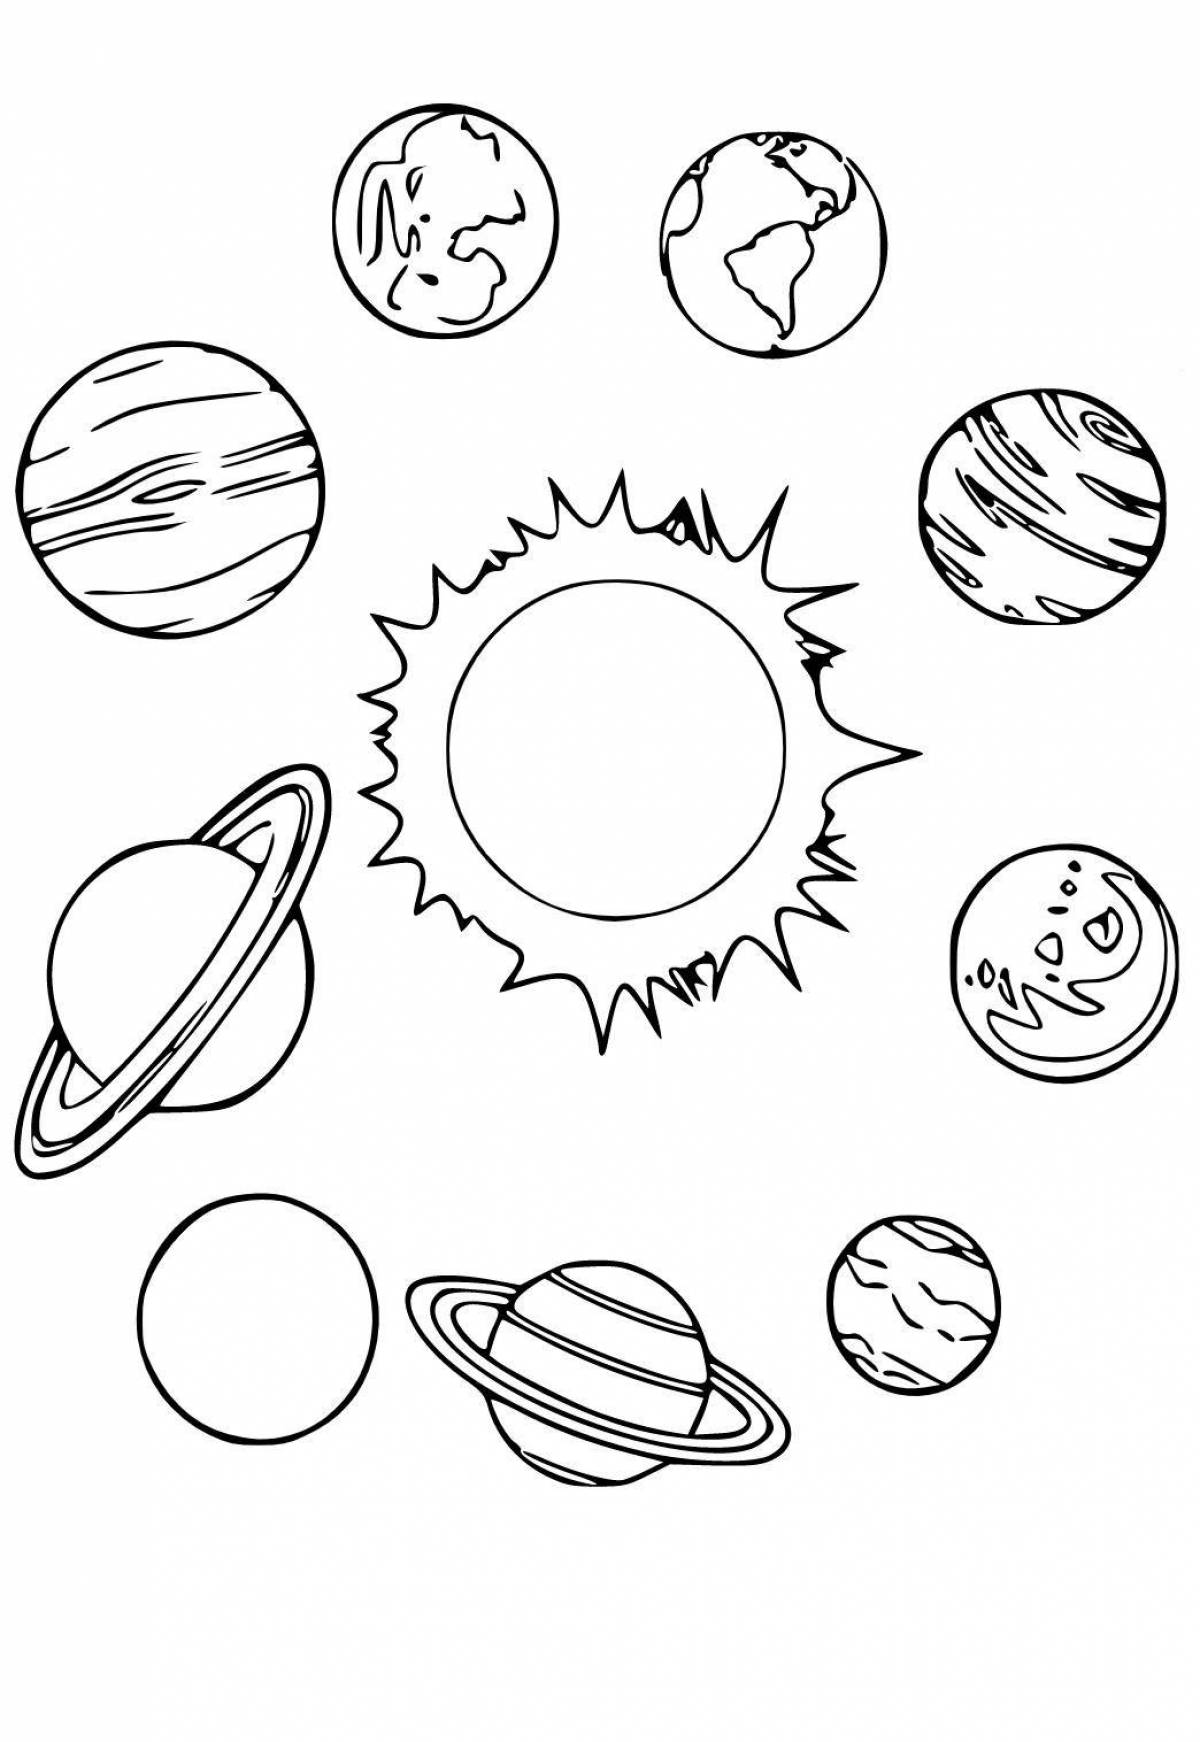 Vivacious coloring page планеты солнечной системы